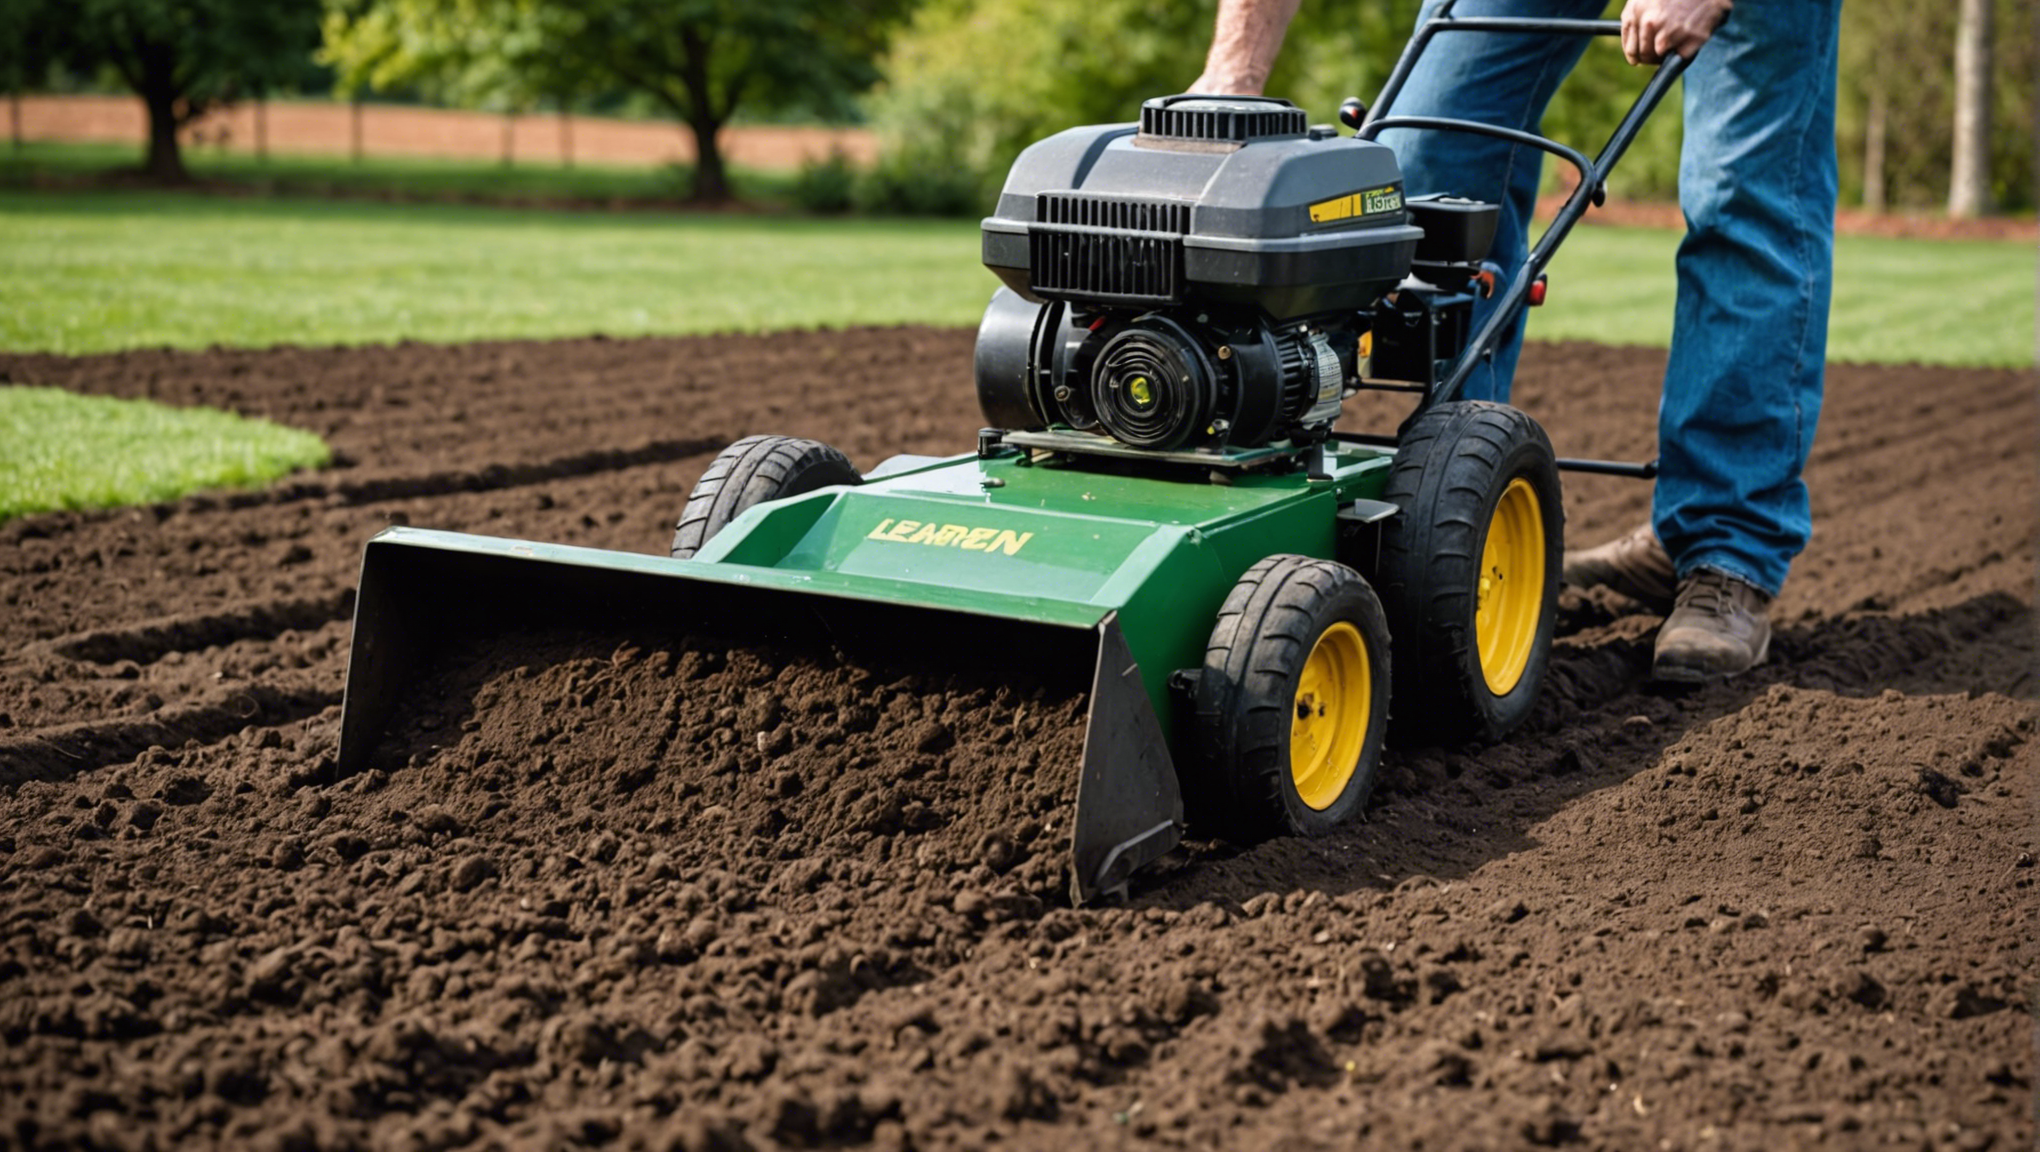 découvrez comment niveler efficacement le sol de votre jardin avec nos conseils pratiques et faciles à mettre en œuvre.